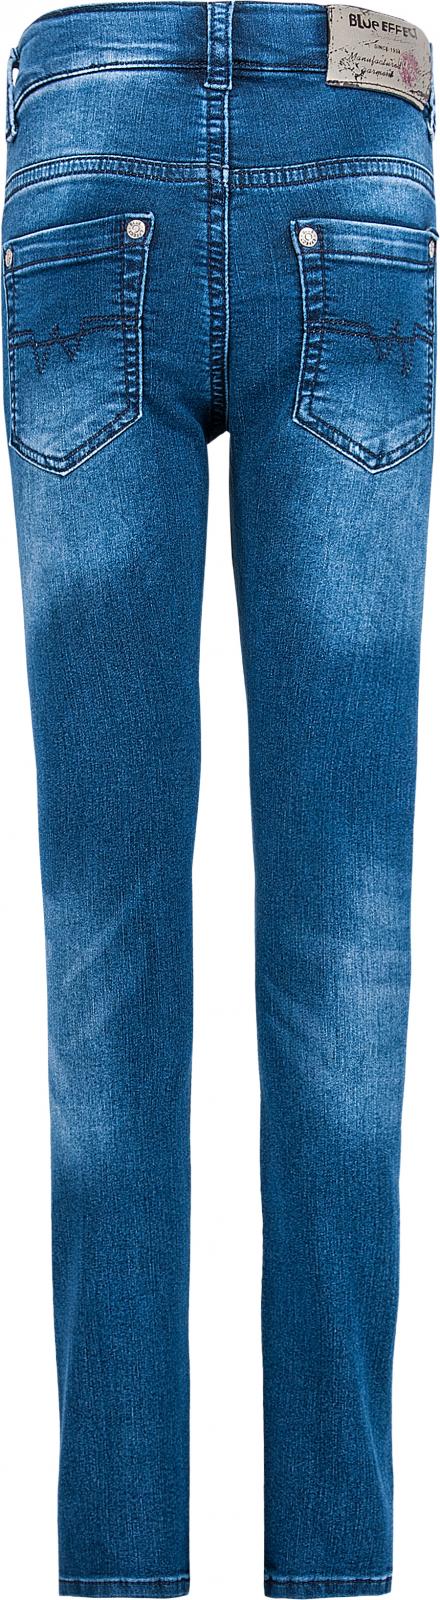 Ultrastretch Jeans Blue Effect Jungen 0226-Skinny